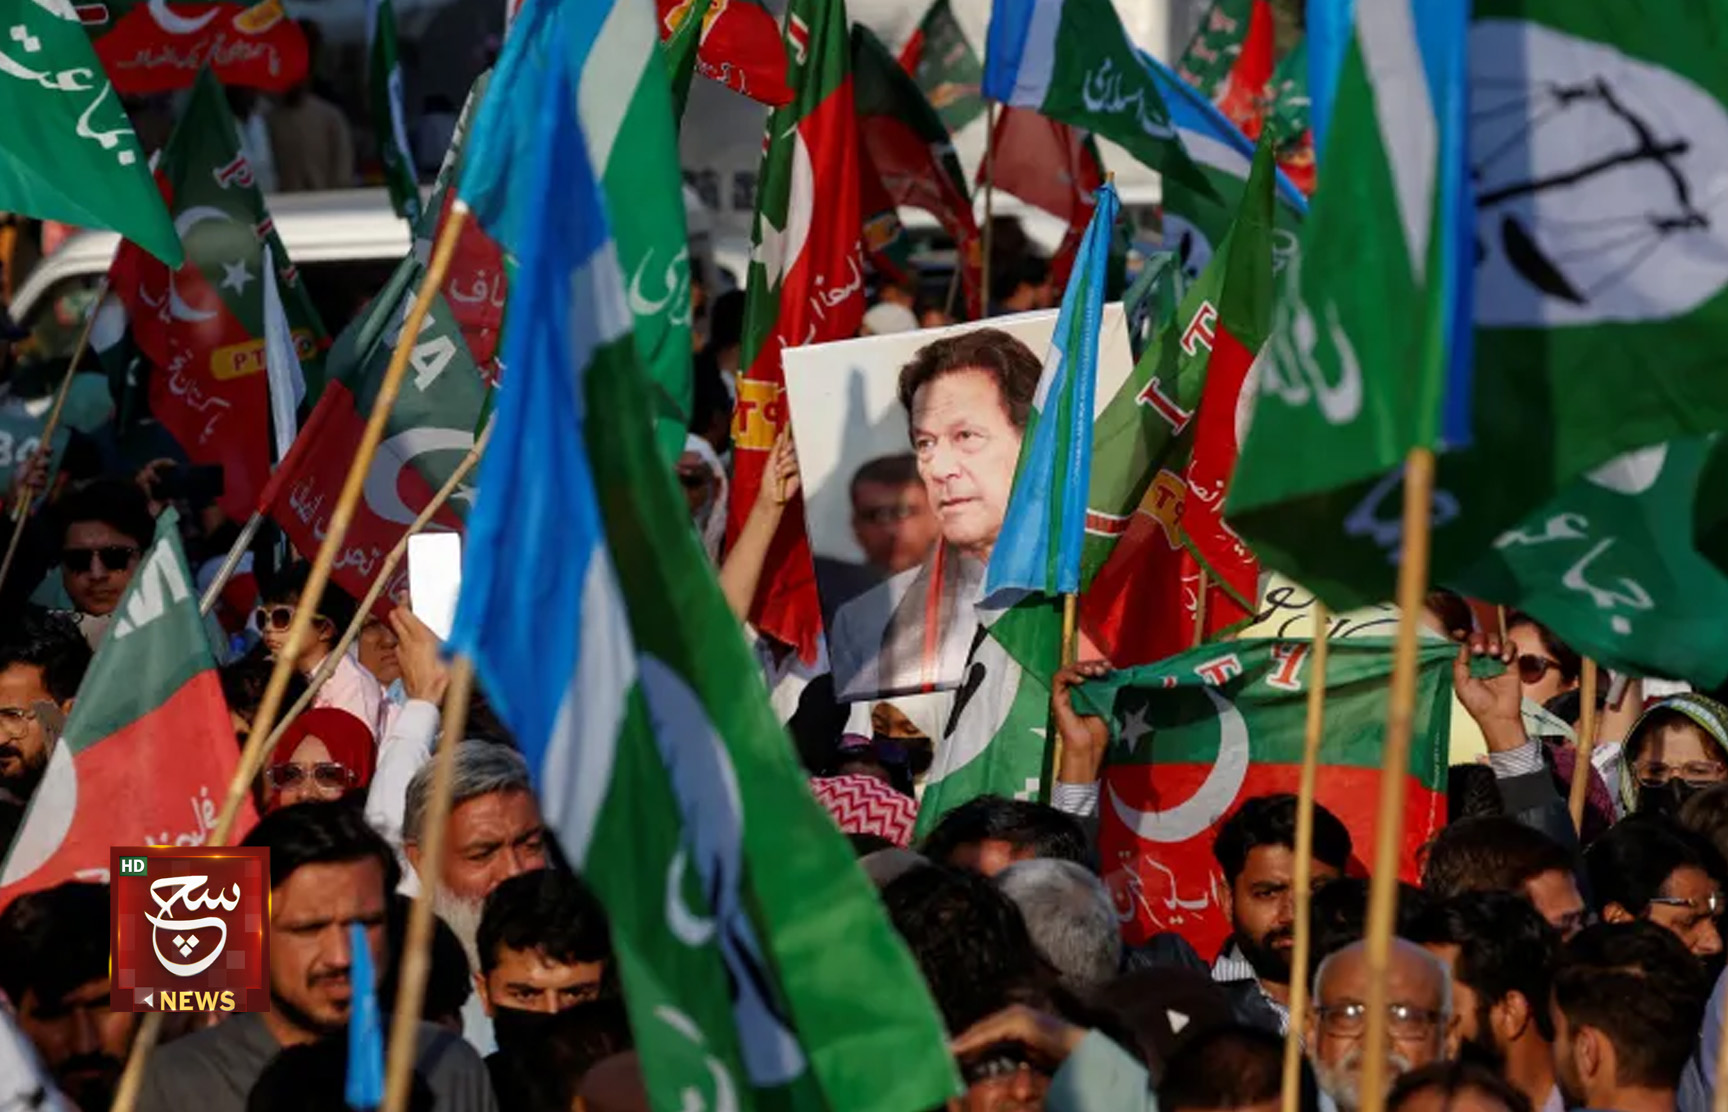 فايننشال تايمز: باكستان تغرق في فراغ السلطة وضربة تاريخية للمؤسسة العسكرية